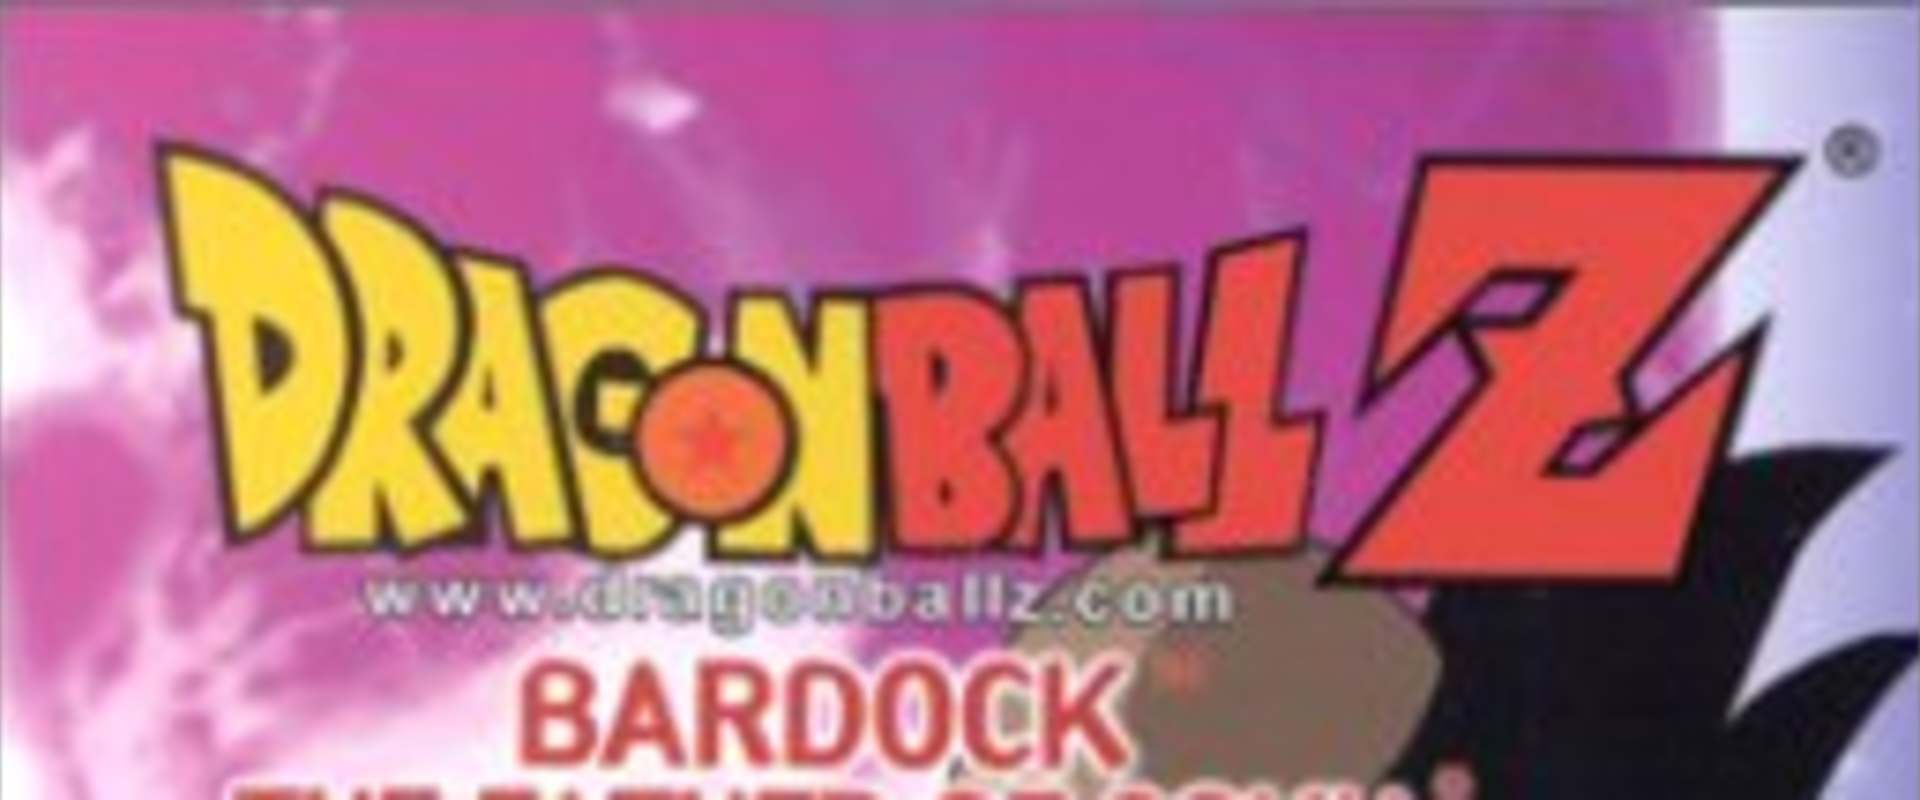 Dragon Ball Z: Bardock - The Father of Goku background 2